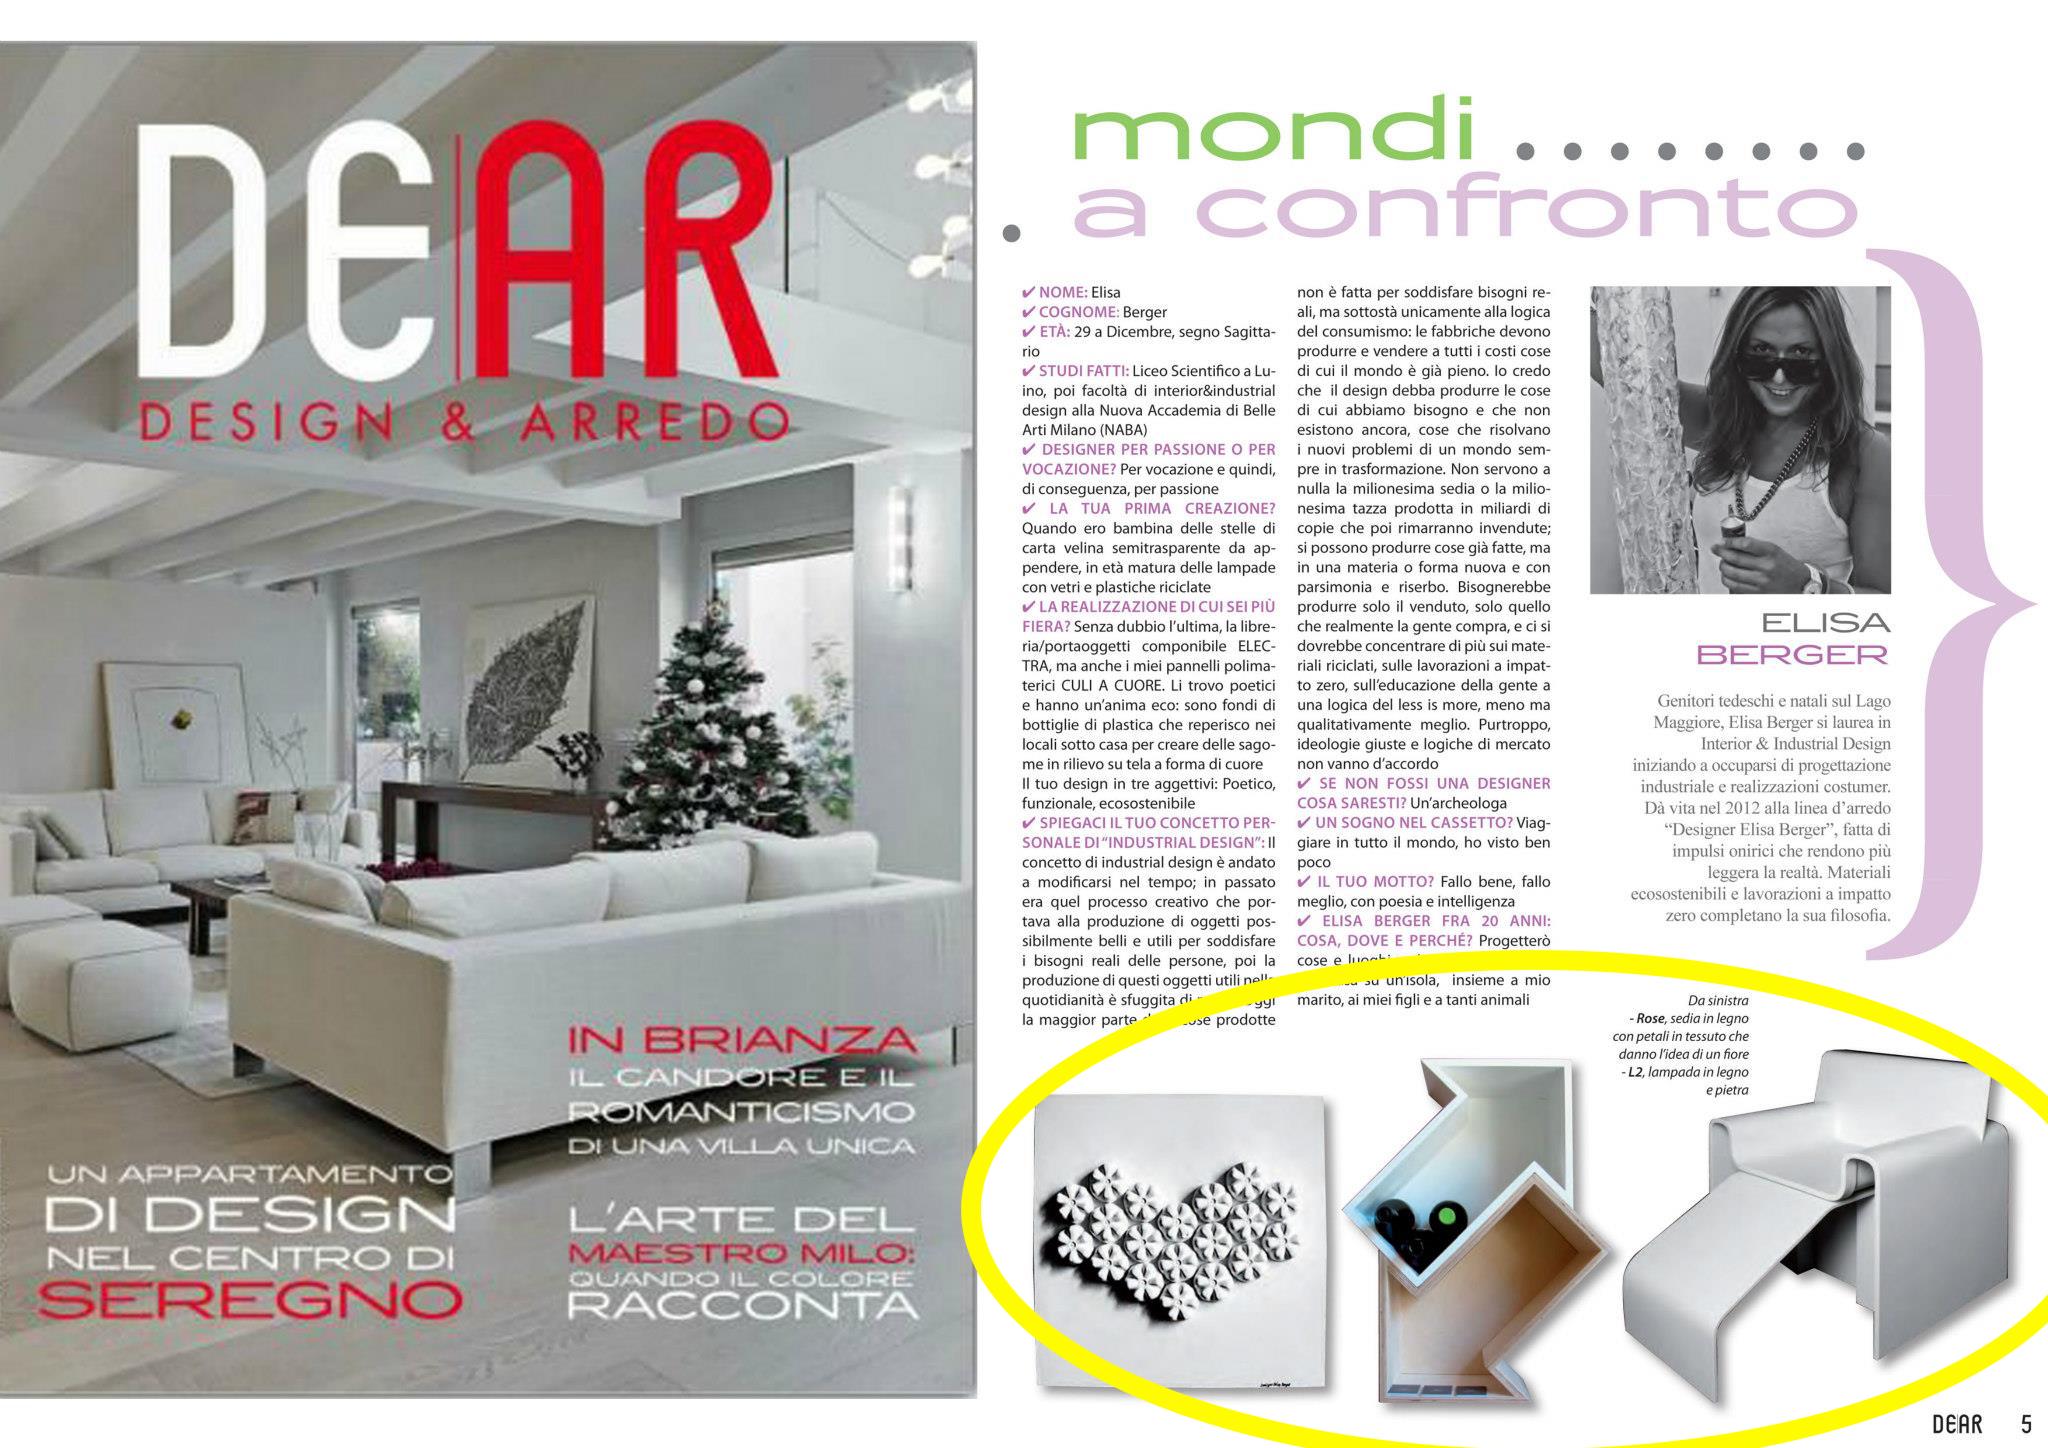 Intervista alla Designer Elisa Berger,Dear Magazine Design e Arredamento,Milano,Lugano,Dear Design e Arredo.Articolo Elisa Berger Design